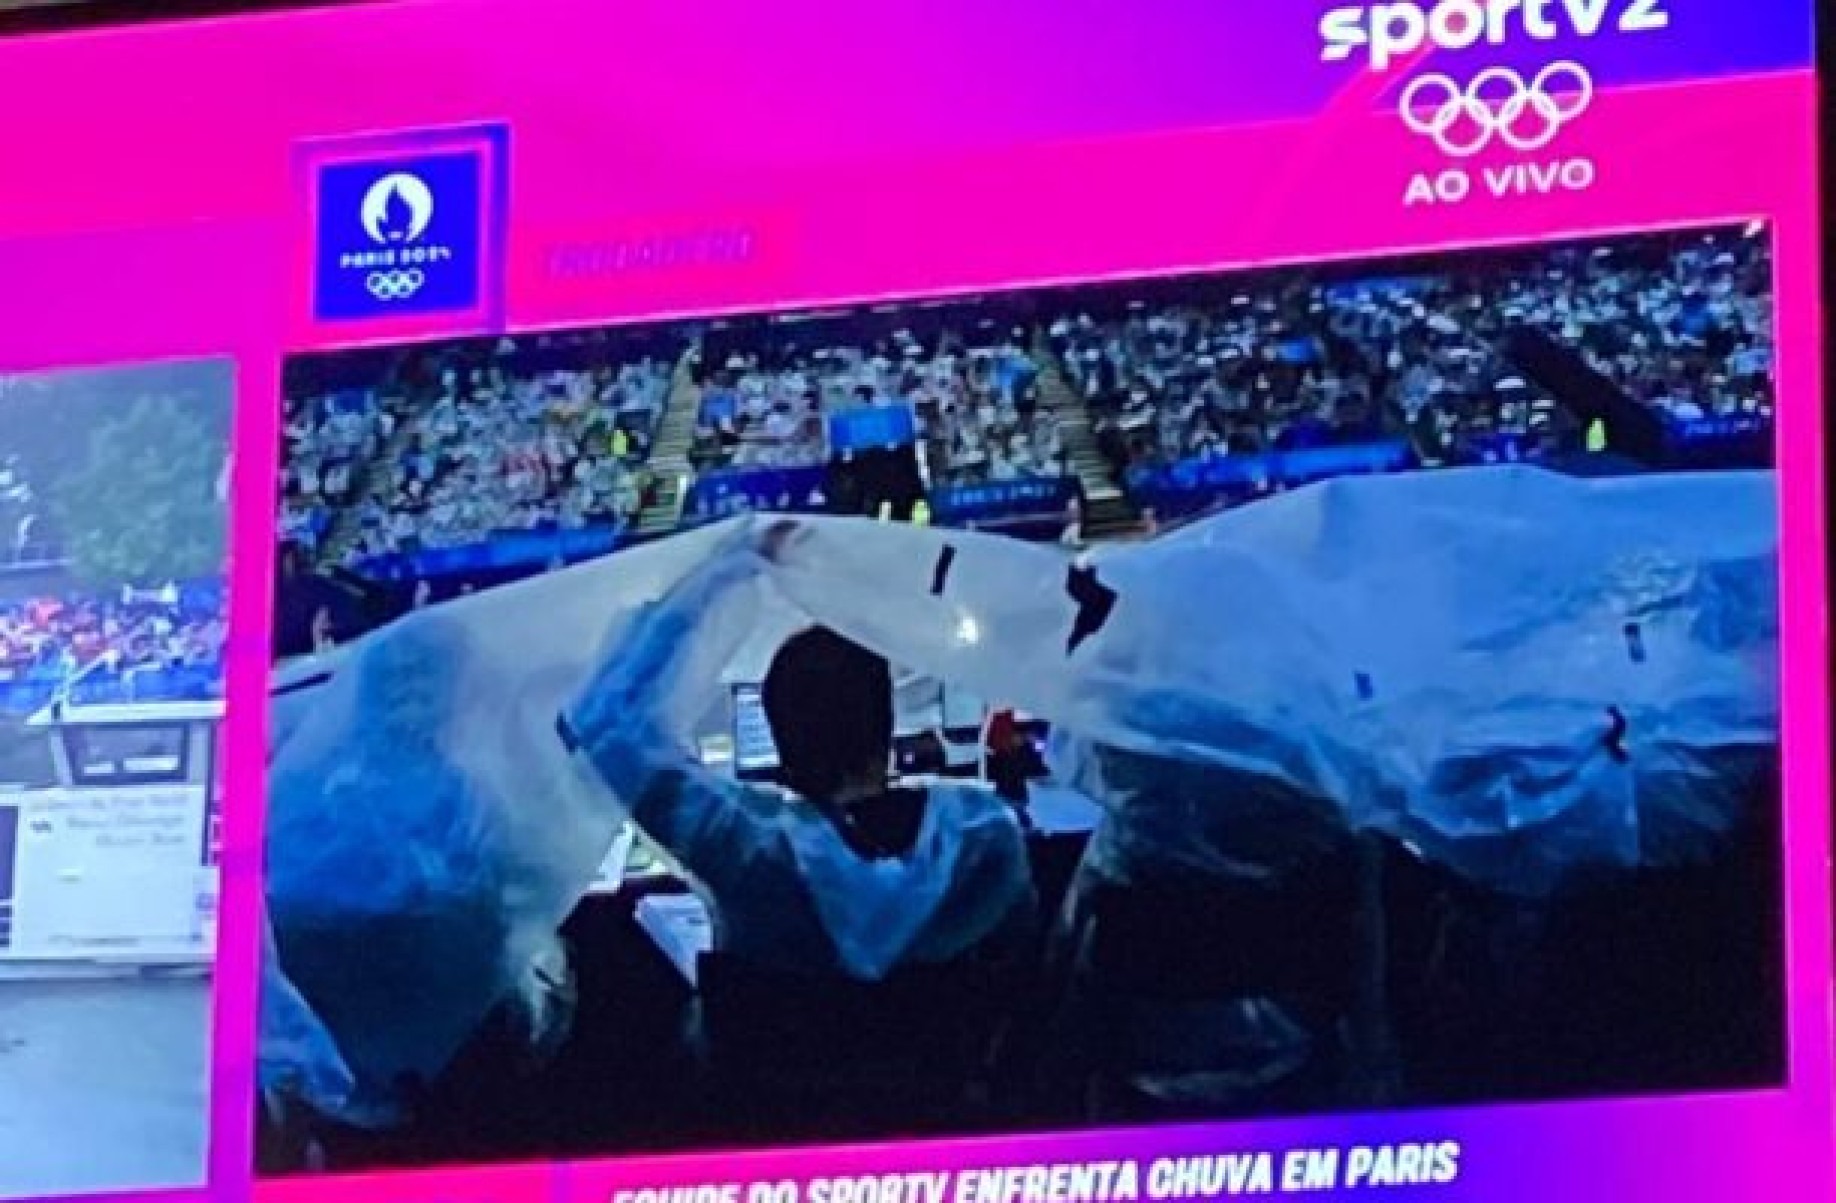 Jogos Olímpicos: SporTV e Globo registram perrengue com chuva em Paris